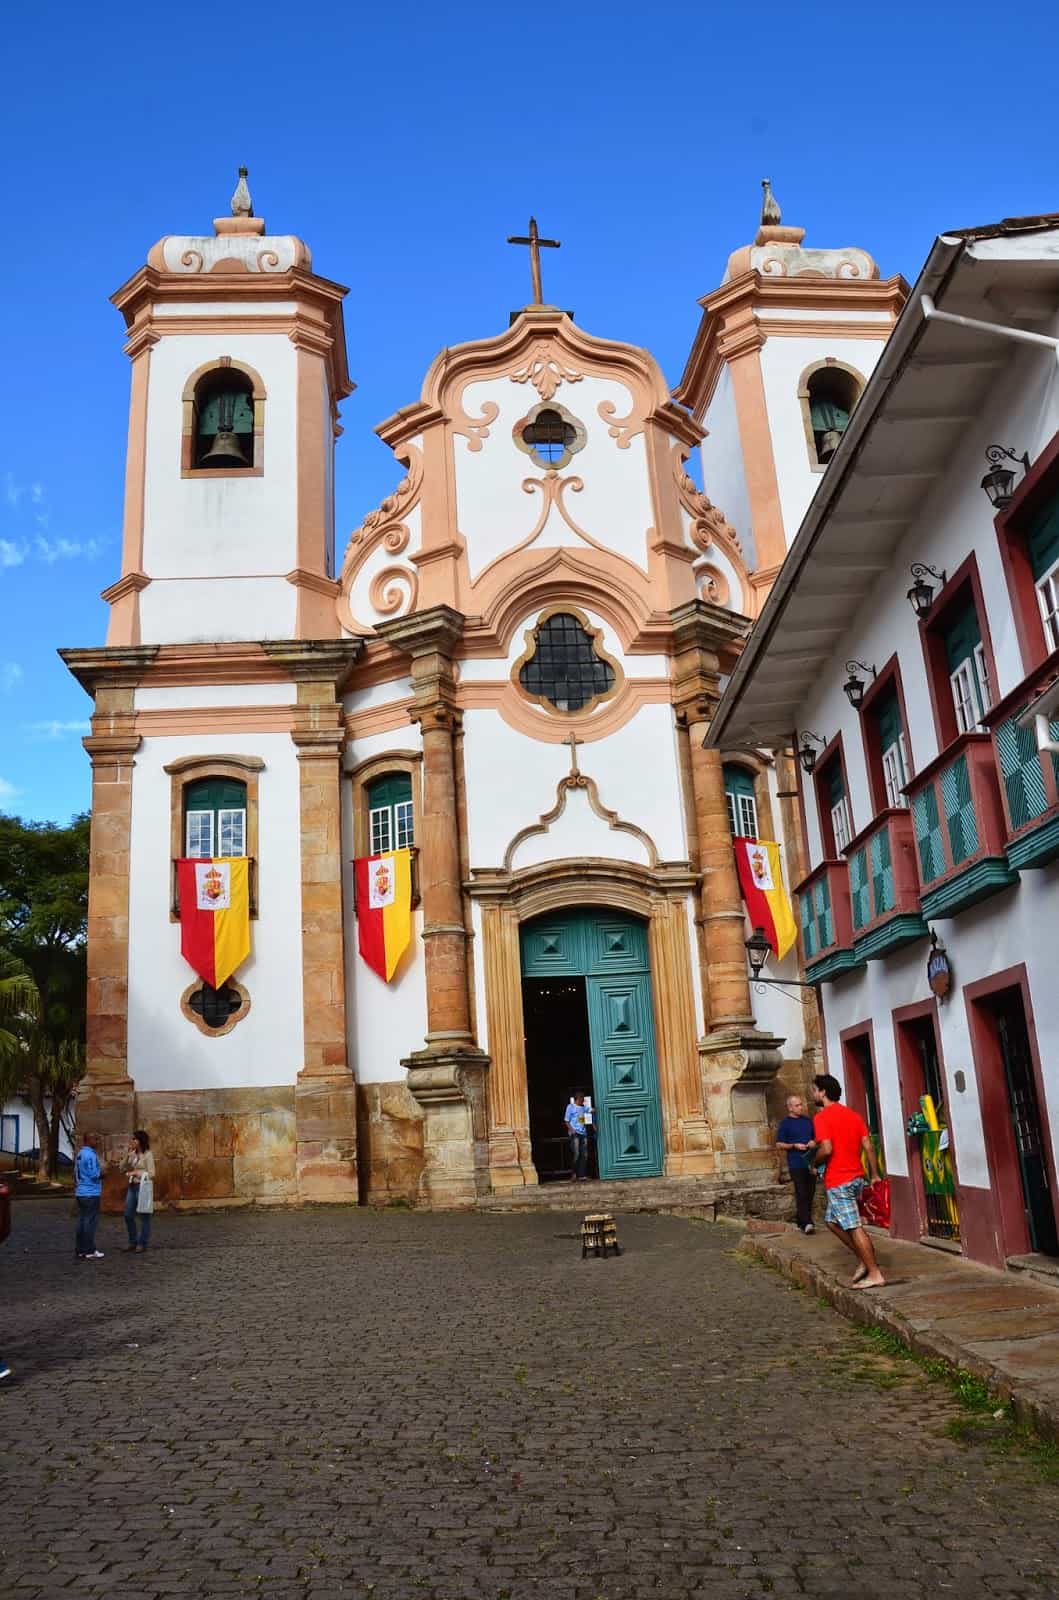 Nossa Senhora do Pilar in Ouro Preto, Brazil